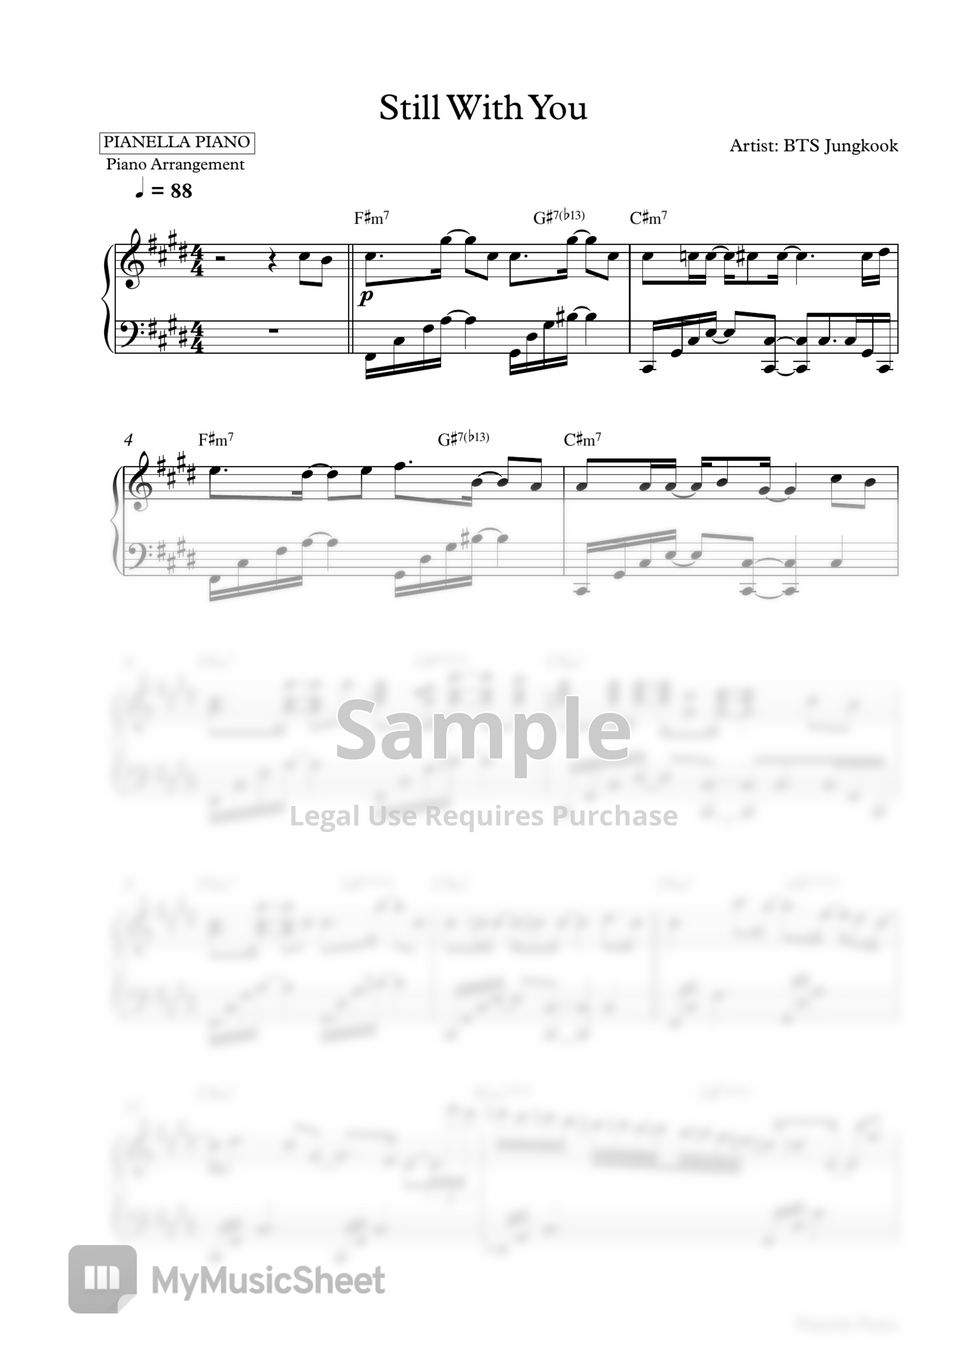 Bts Jungkook - Still With You (Piano Sheet) Bản Nhạc By Pianella Piano